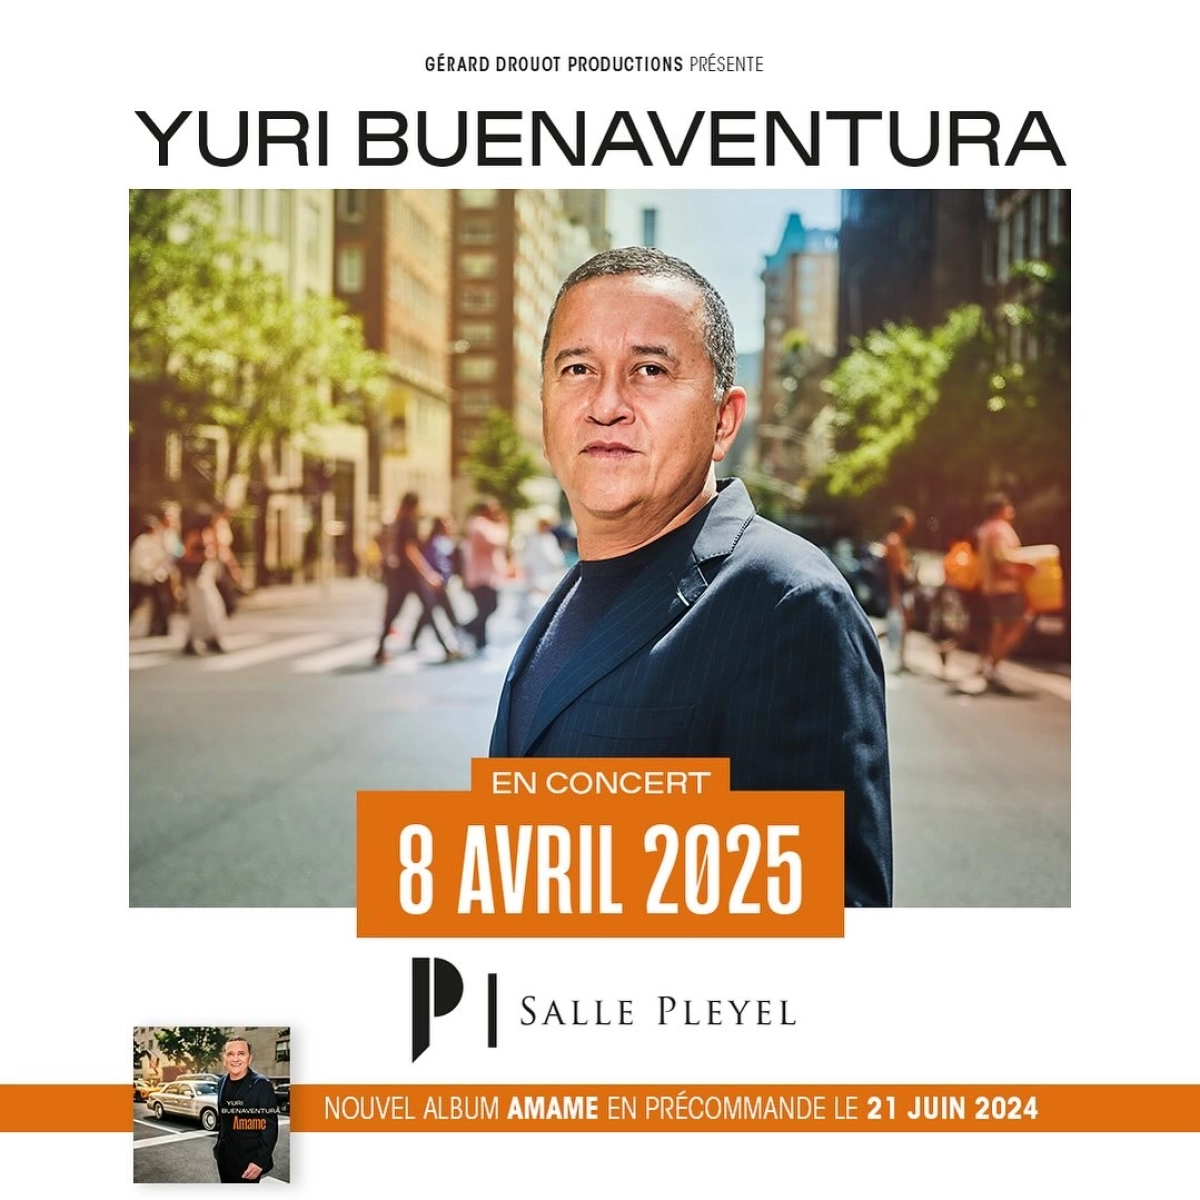 Concert Yuri Buenaventura à Paris (Salle Pleyel) du 08 avril 2025